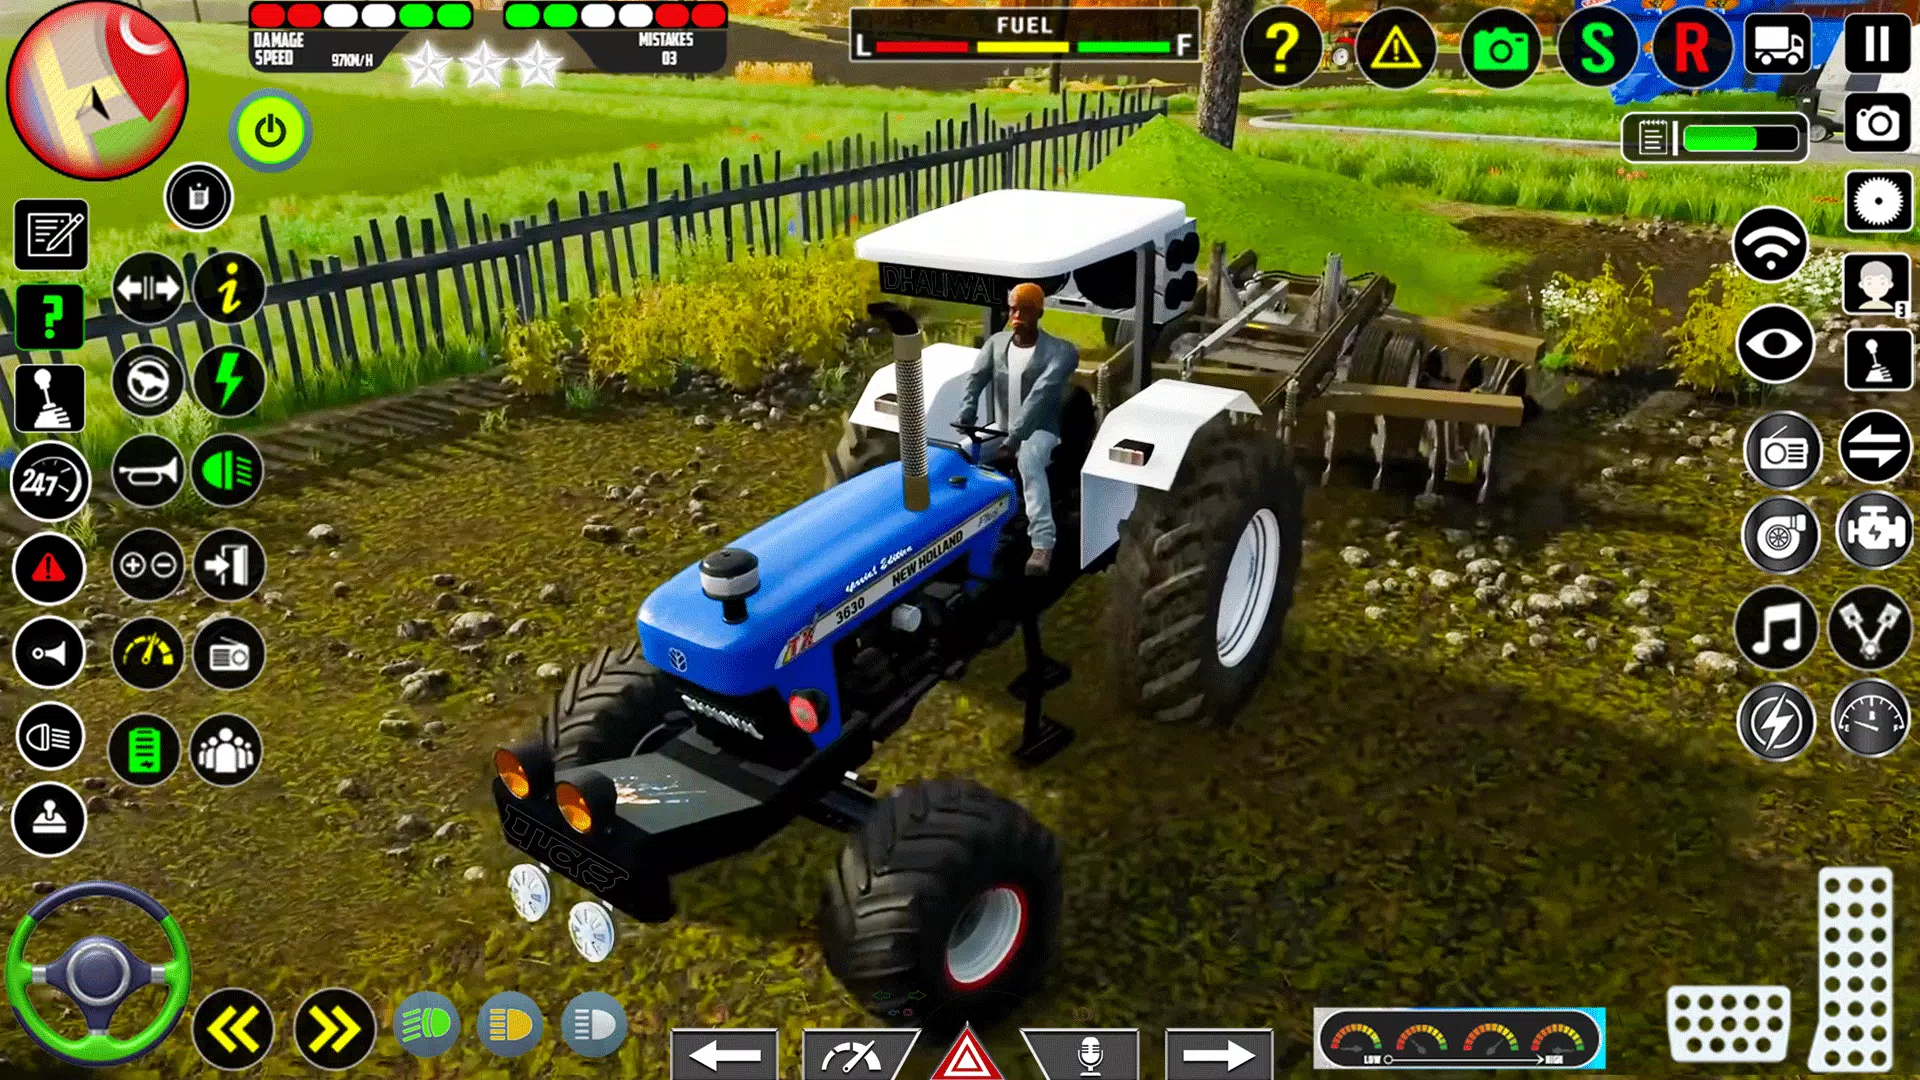 jogos trator: trator agrícola APK (Android Game) - Baixar Grátis